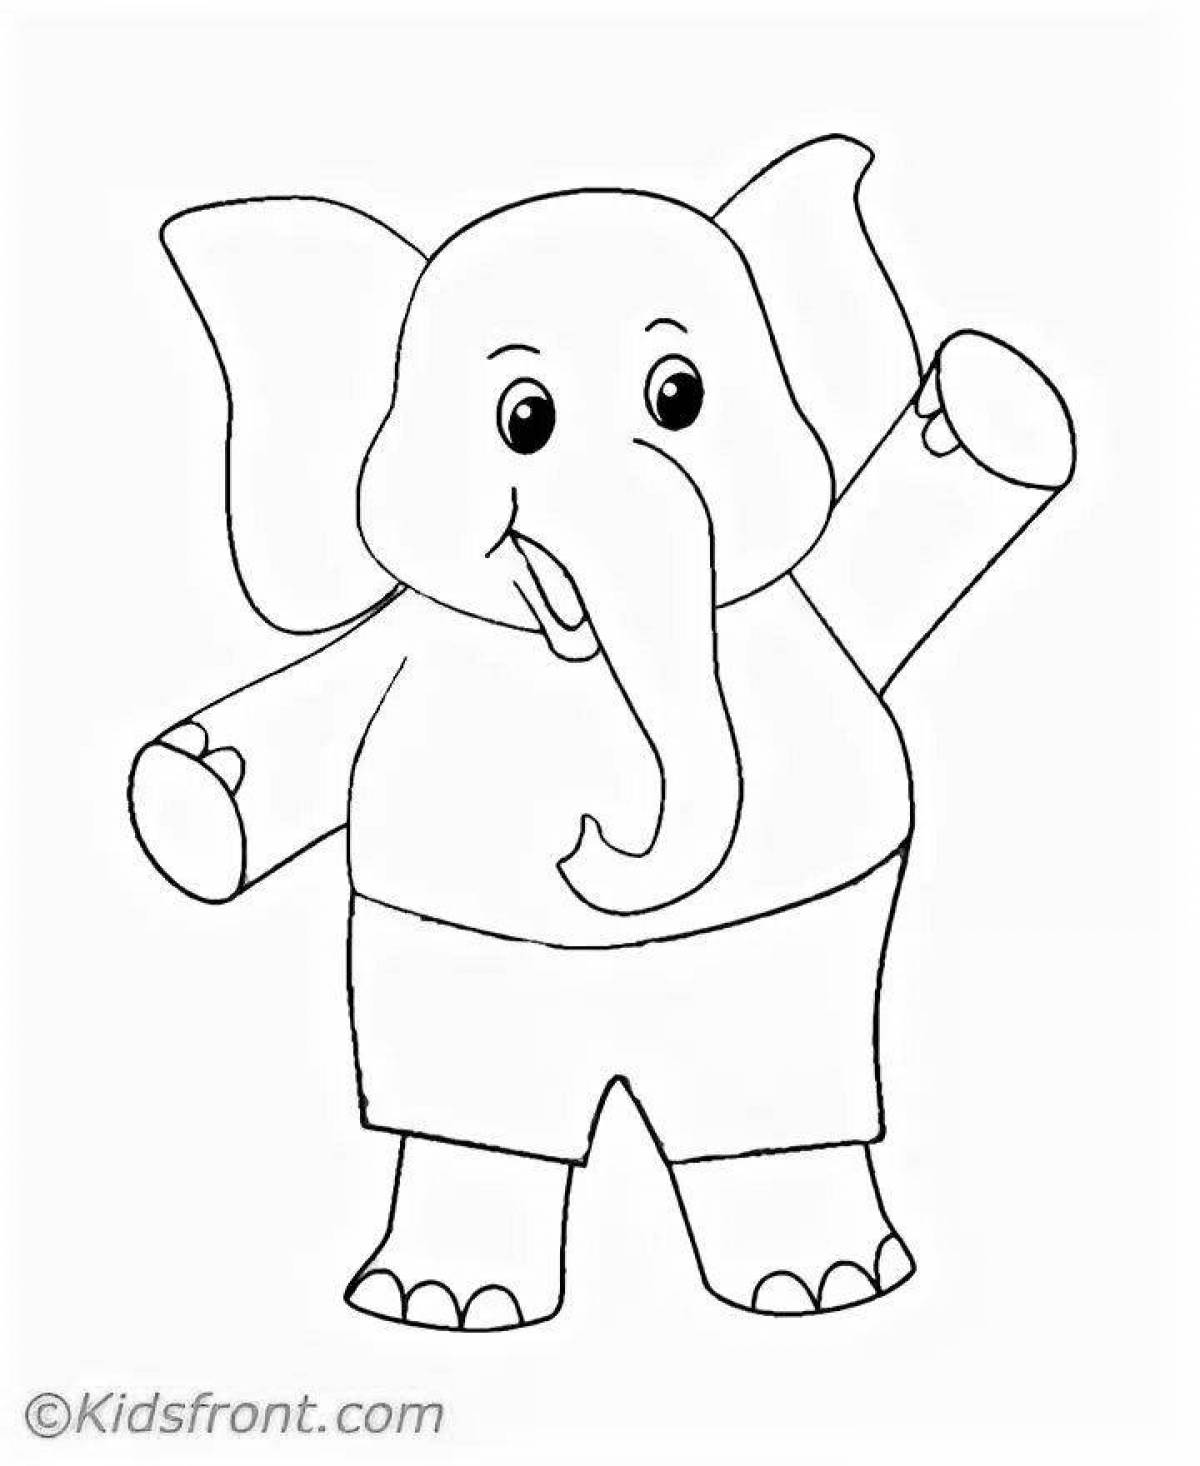 Великолепная раскраска слона для детей 3-4 лет